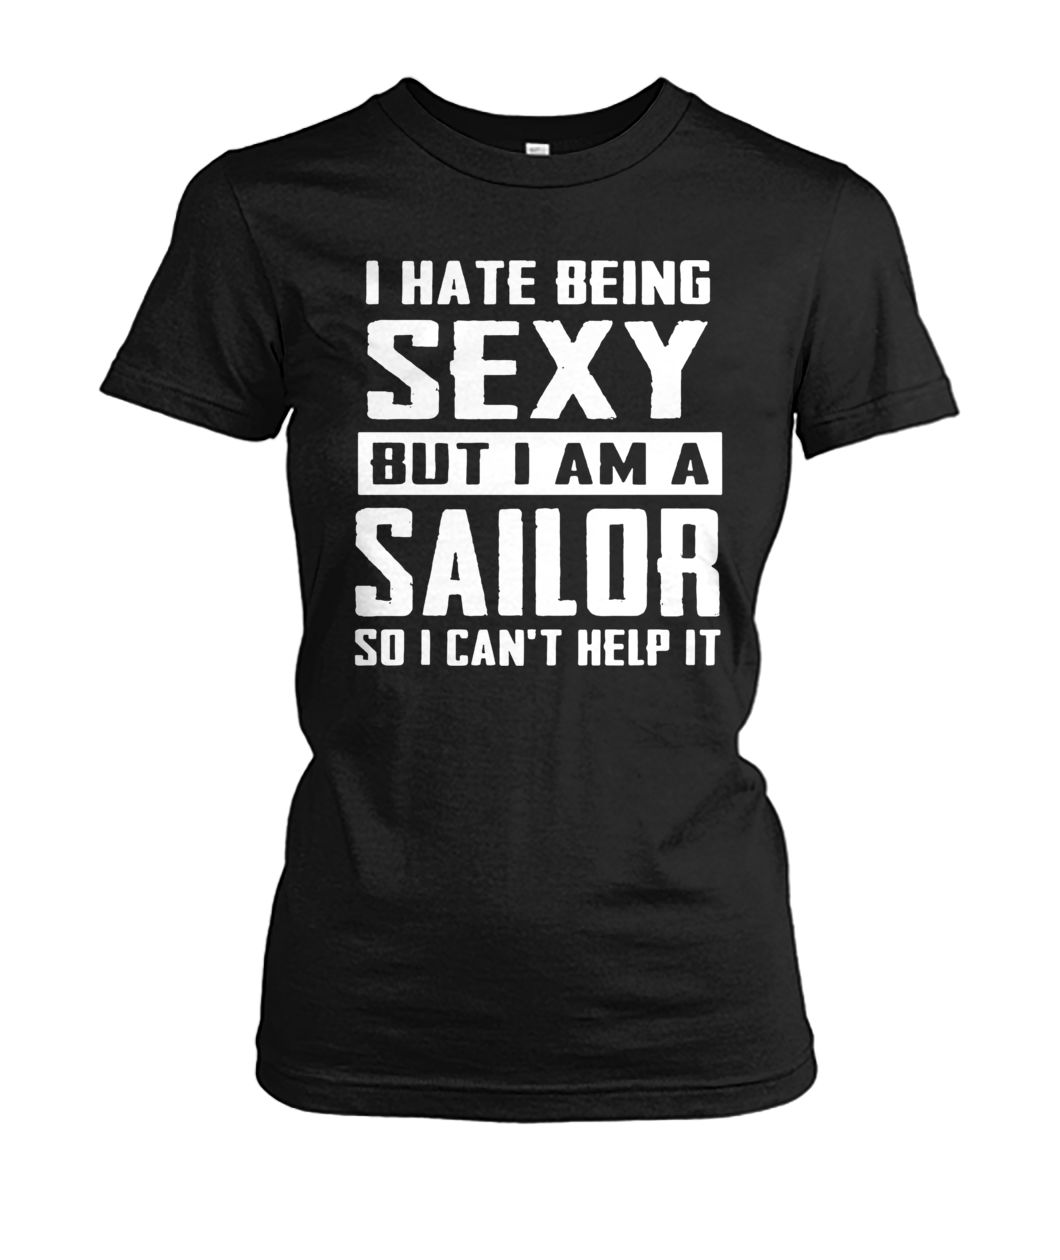 I hate being sexy out I am a sailor so I can't help it women's crew tee